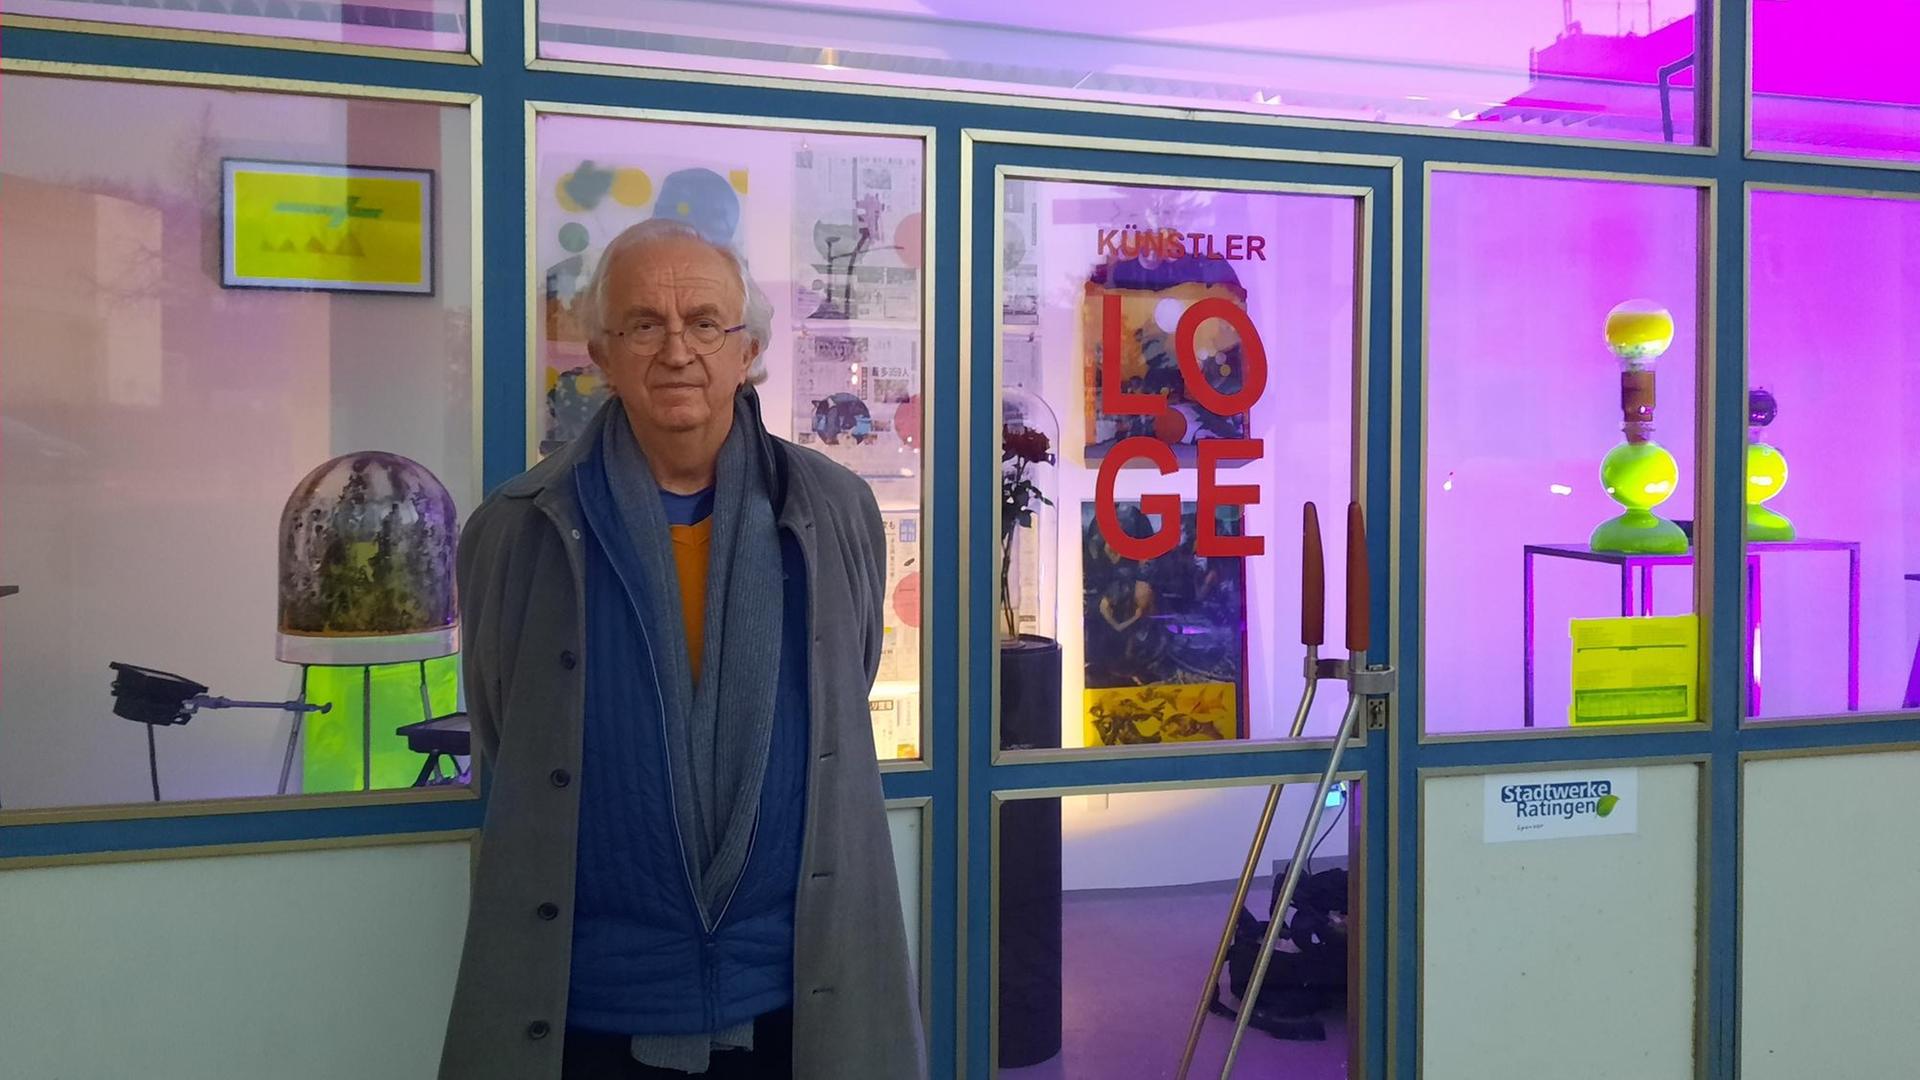 Der Künstler Helmut Schweizer vor der Künstlerloge in Ratingen, wo seine Ausstellung "Hiroshima_Endlager (1945-2020)" gezeigt wird.